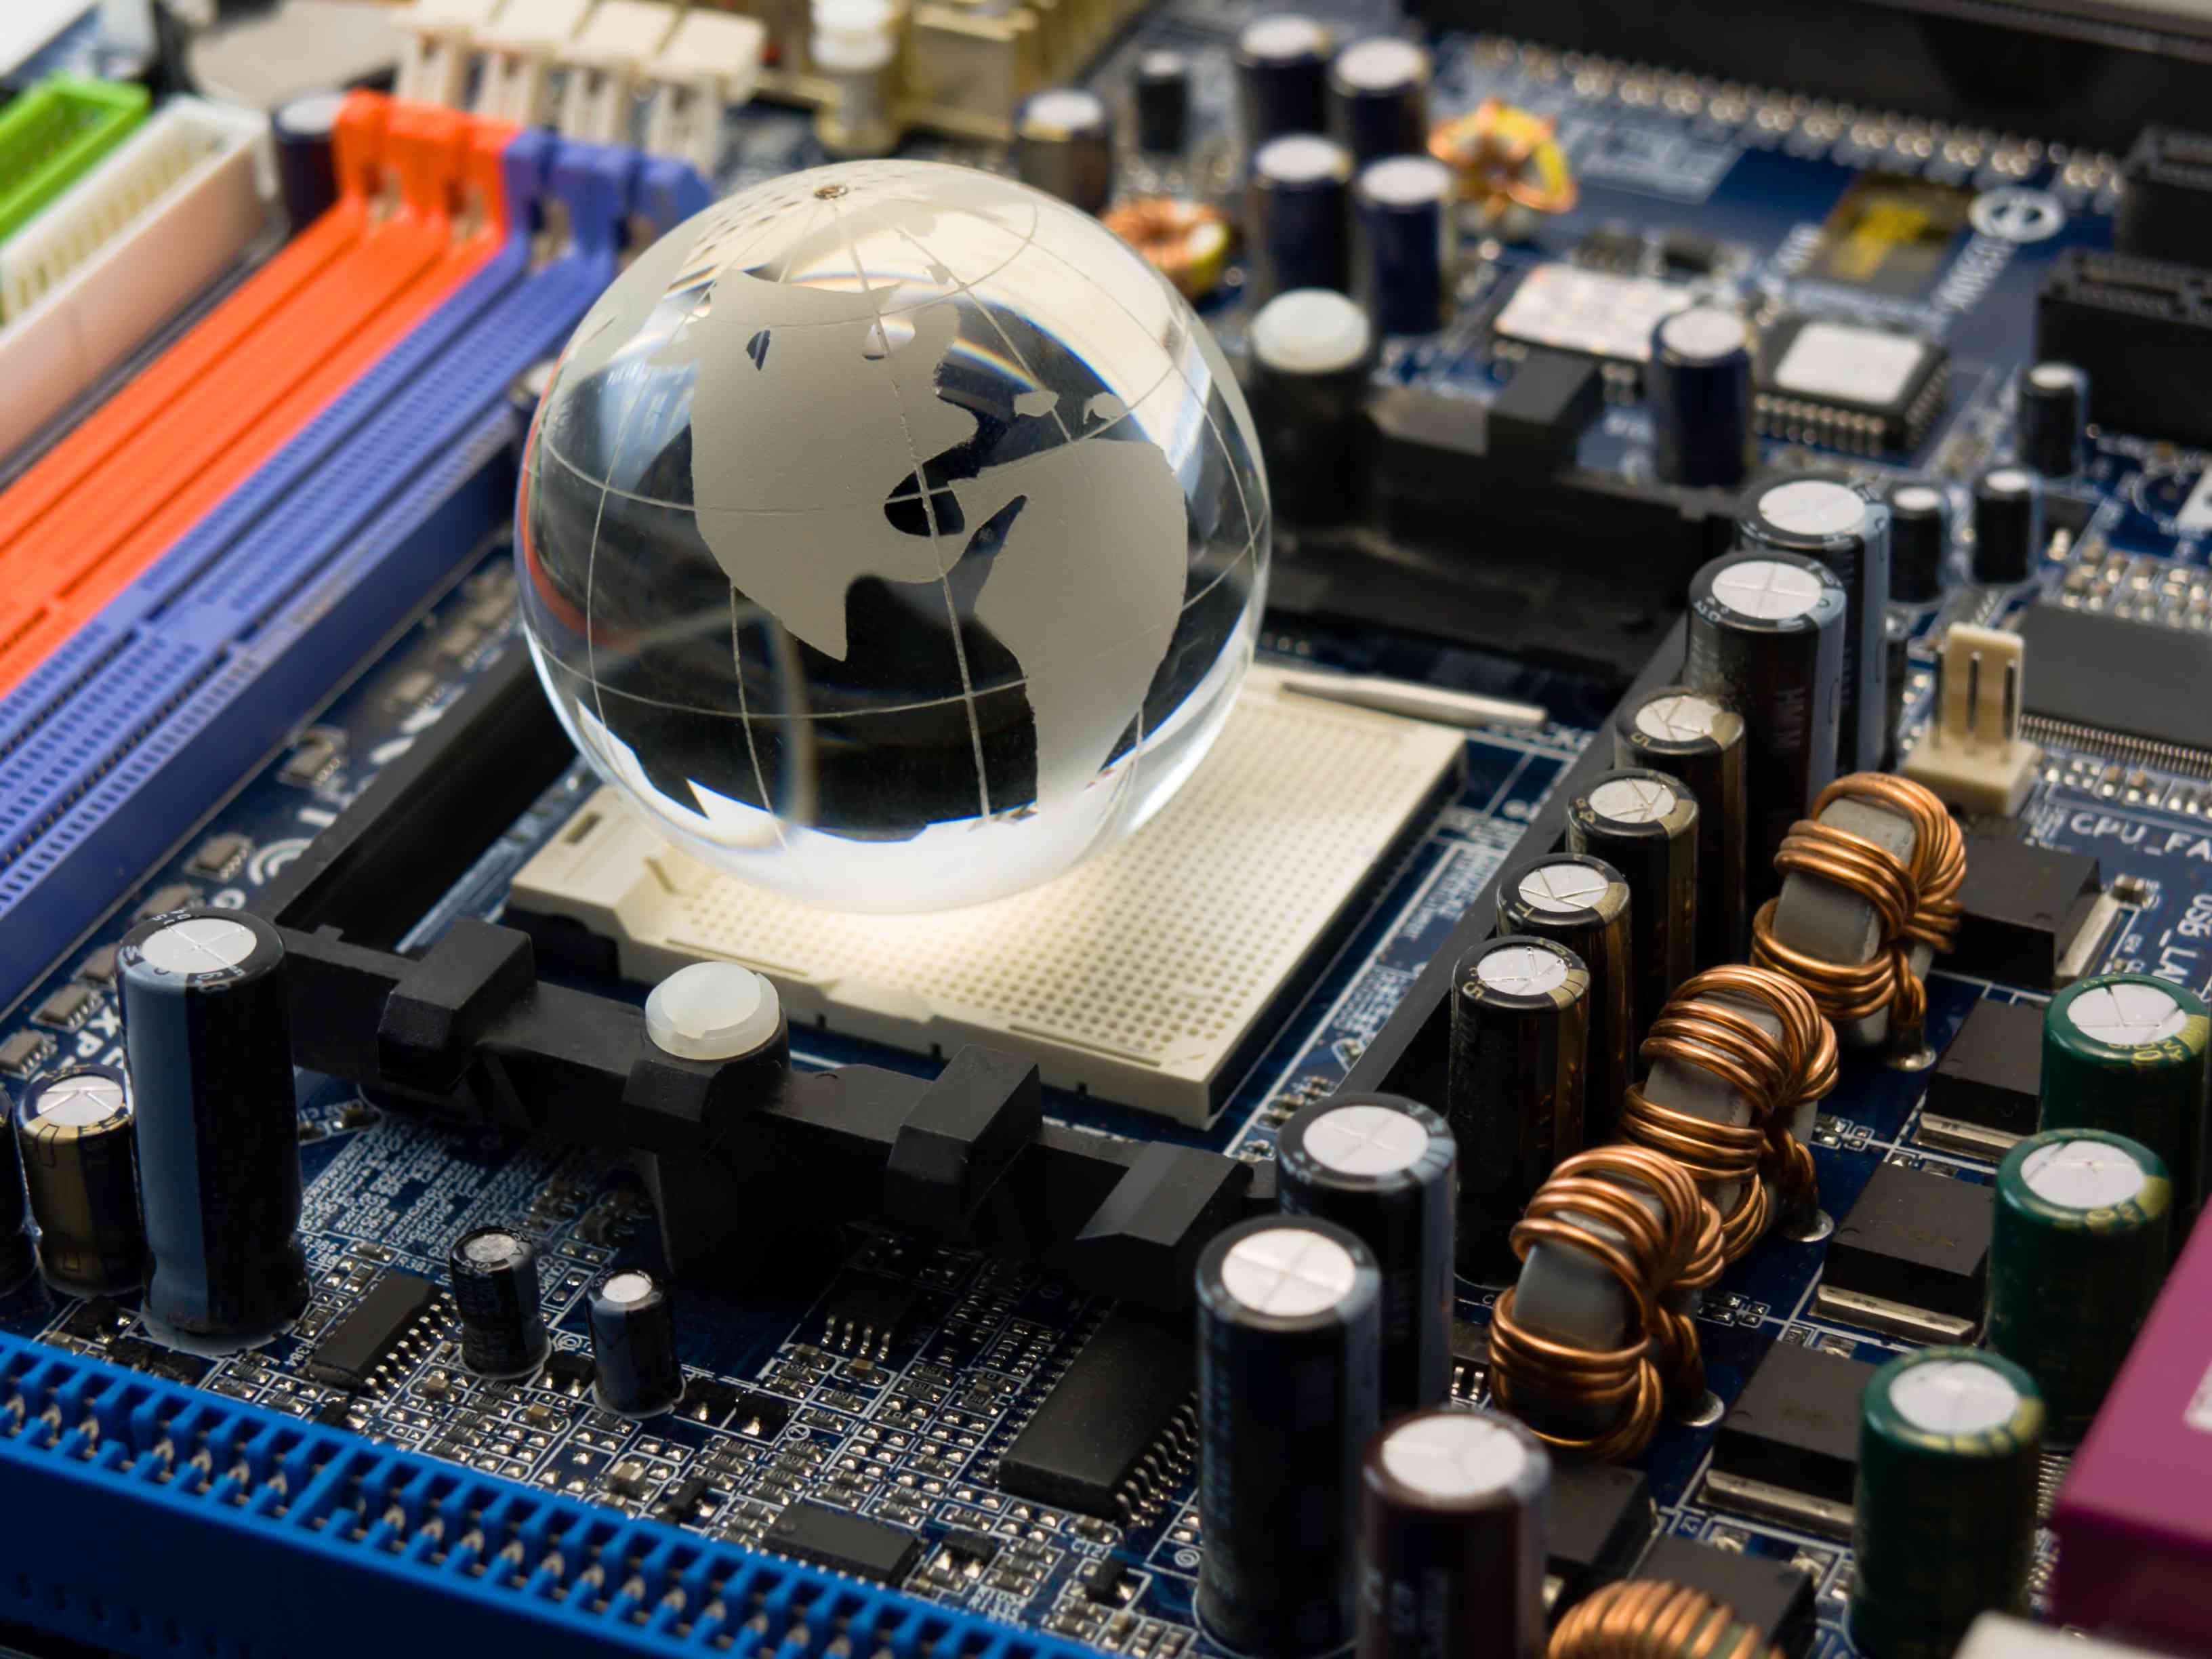 Uma placa de sistema de computador com um globo de vidro.